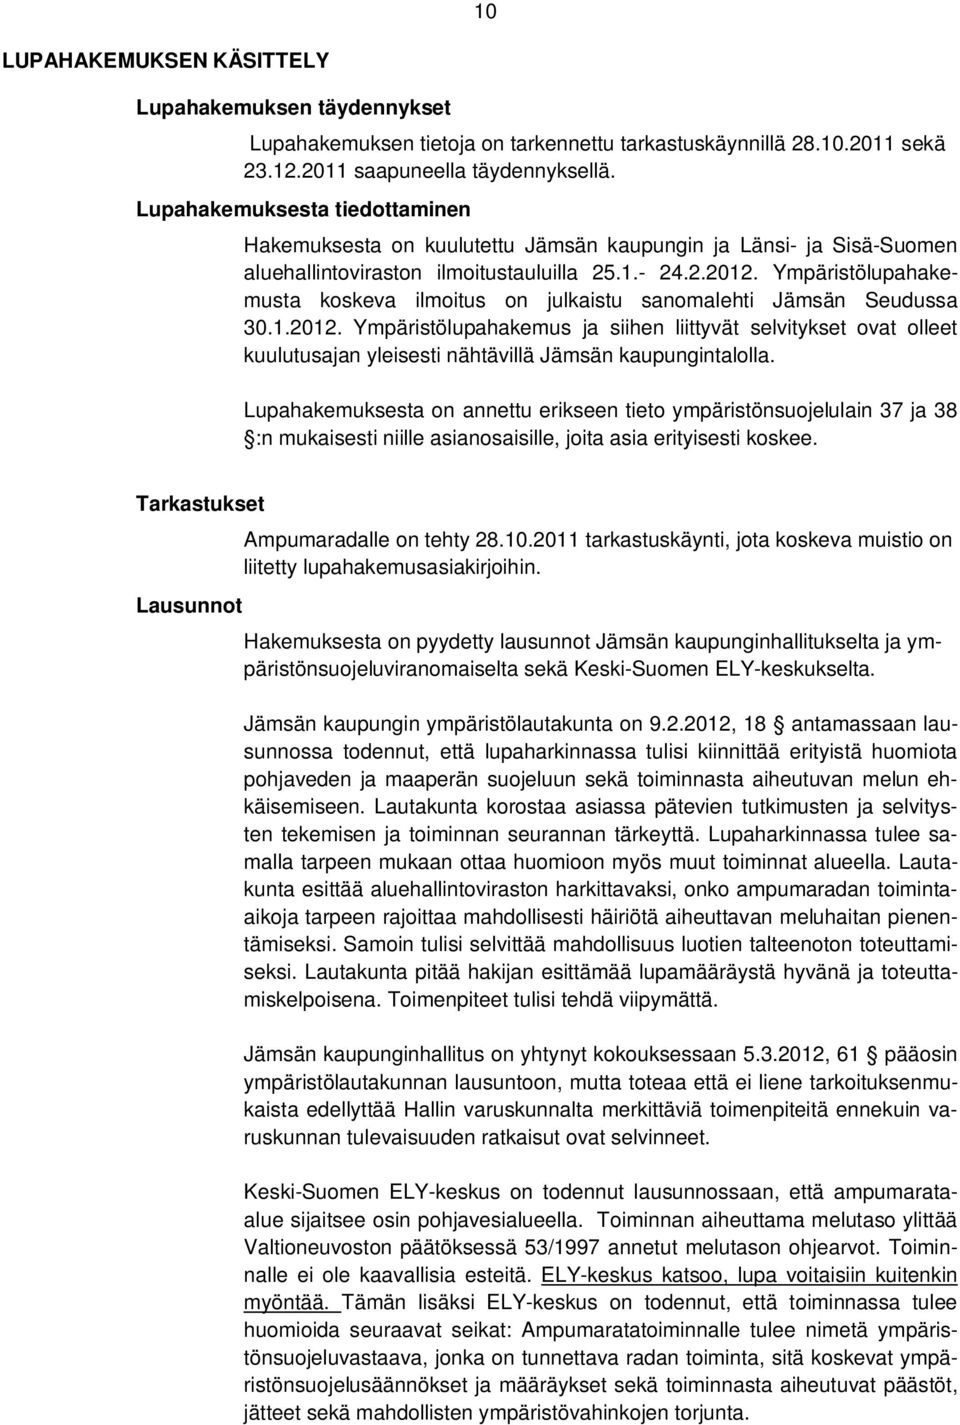 Ympäristölupahakemusta koskeva ilmoitus on julkaistu sanomalehti Jämsän Seudussa 30.1.2012.